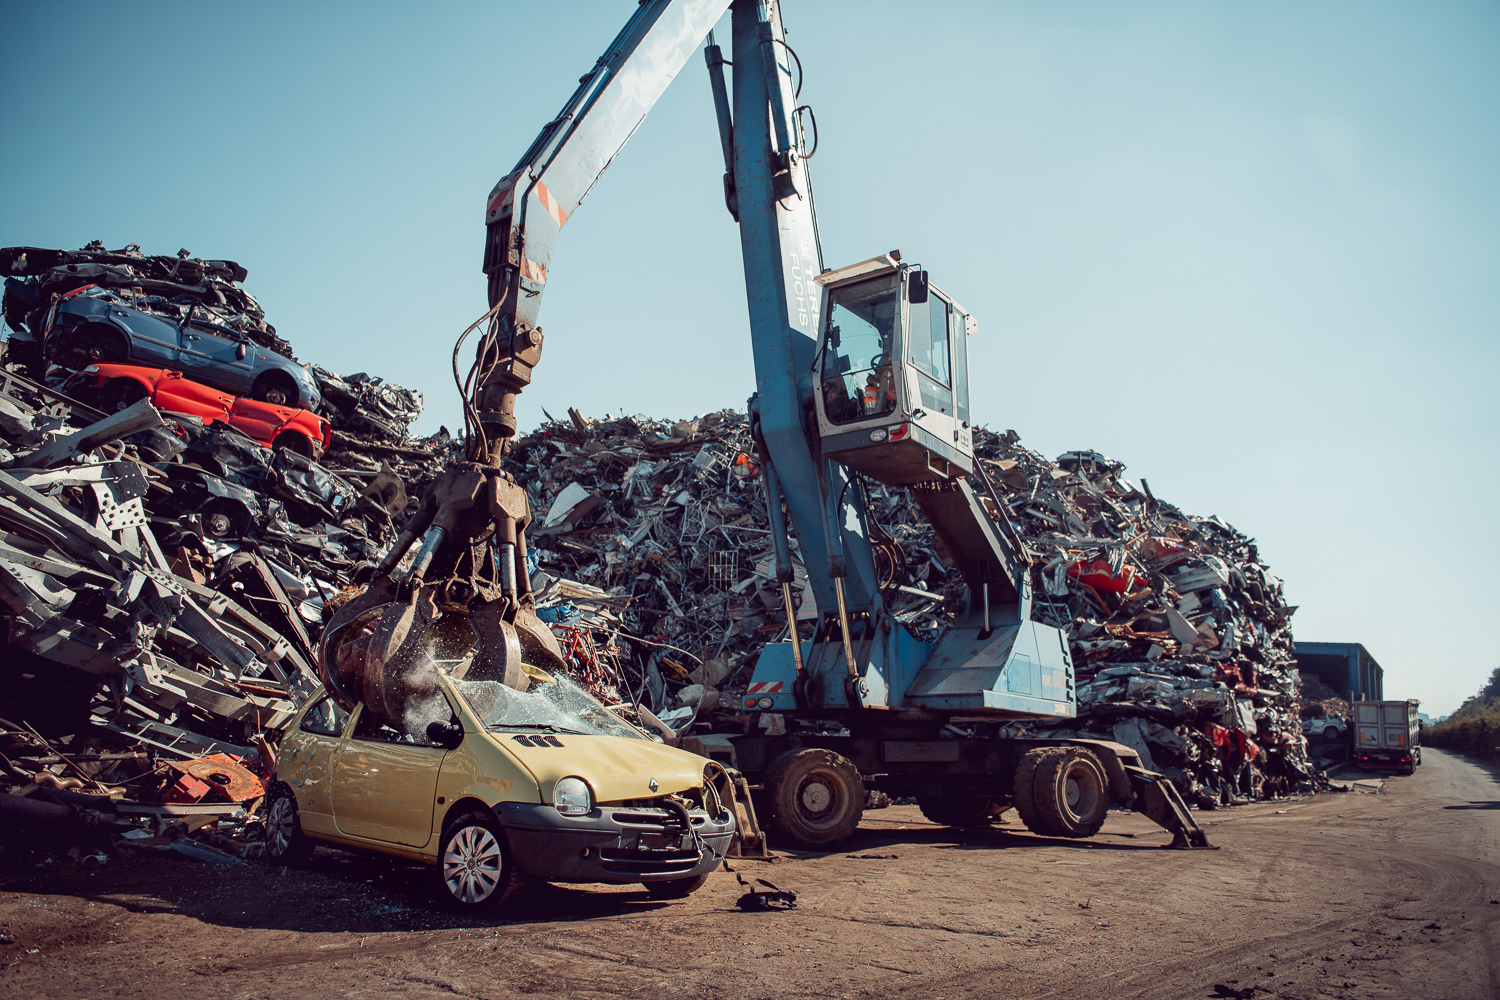 Fotografische Firmenreportage für Thommen Recycling. Aufnahme von einem Kran der ein Auto zur Wiederverwertung zerlegt.